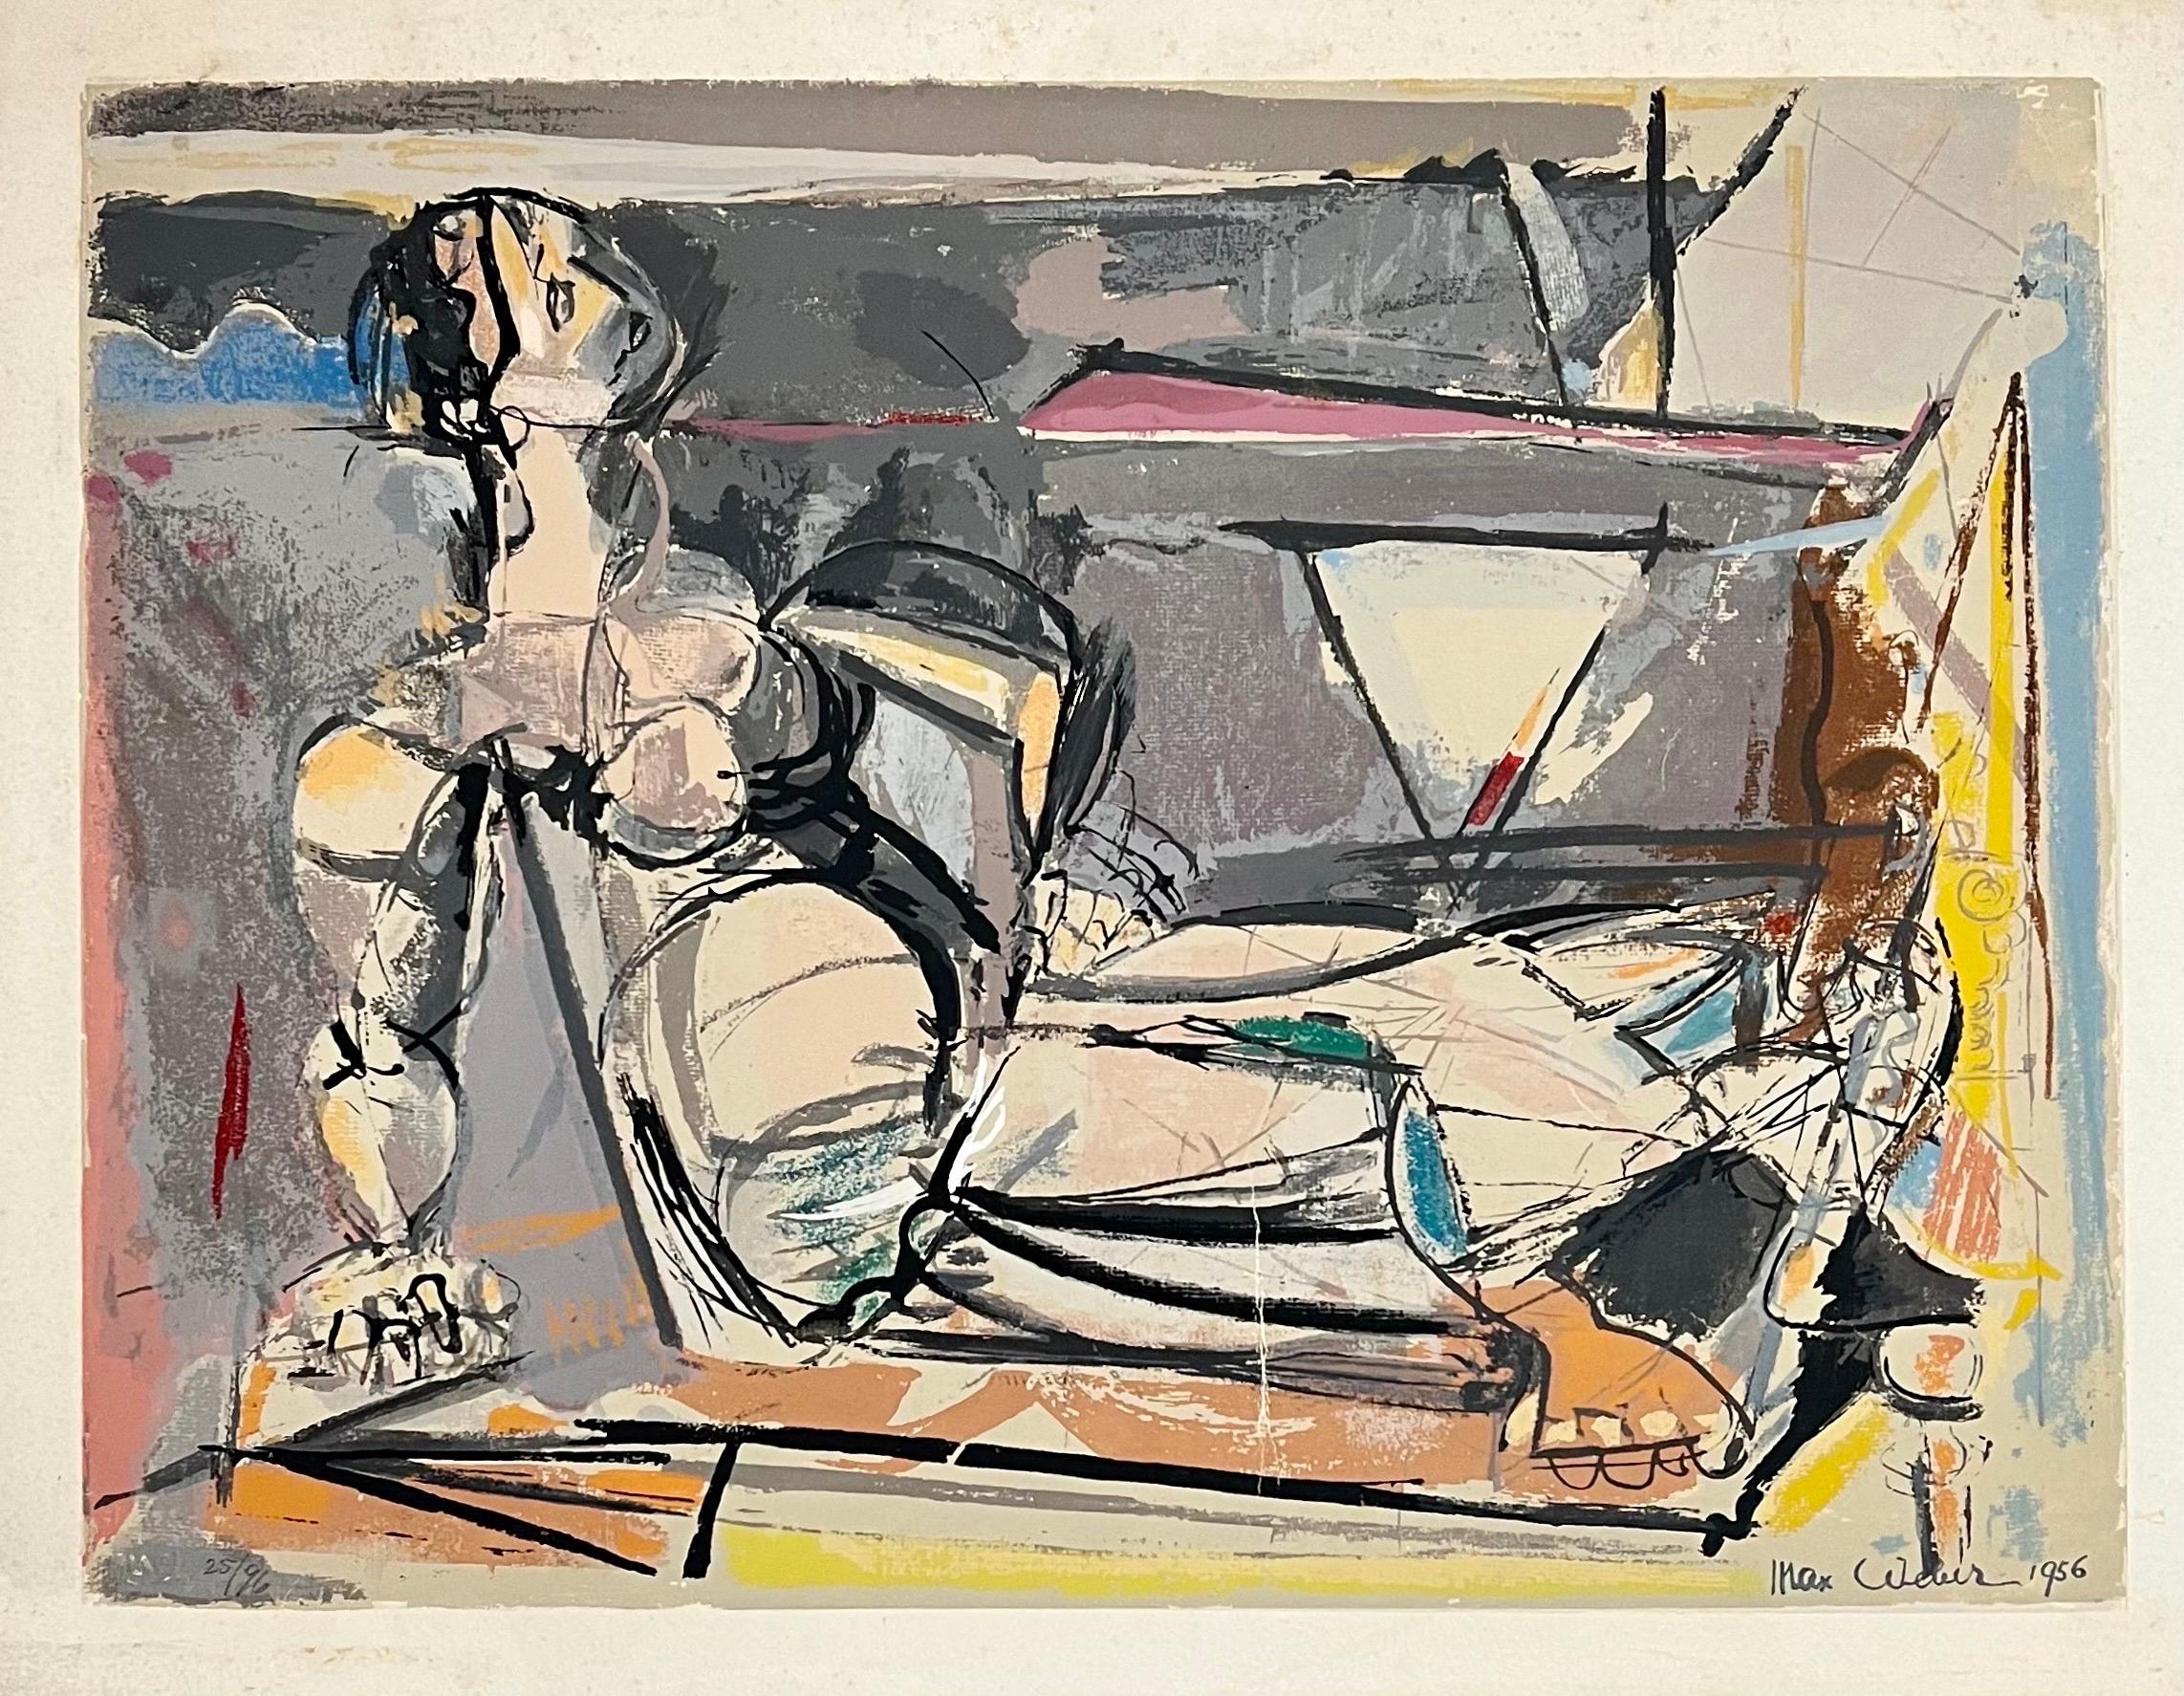 Liegende kubistische nackte Frau

Max Weber (18. April 1881 - 4. Oktober 1961) war ein jüdisch-amerikanischer Maler und einer der ersten kubistischen Maler Amerikas, der sich später in seiner Kunst eher figurativen jüdischen Themen zuwandte. Heute